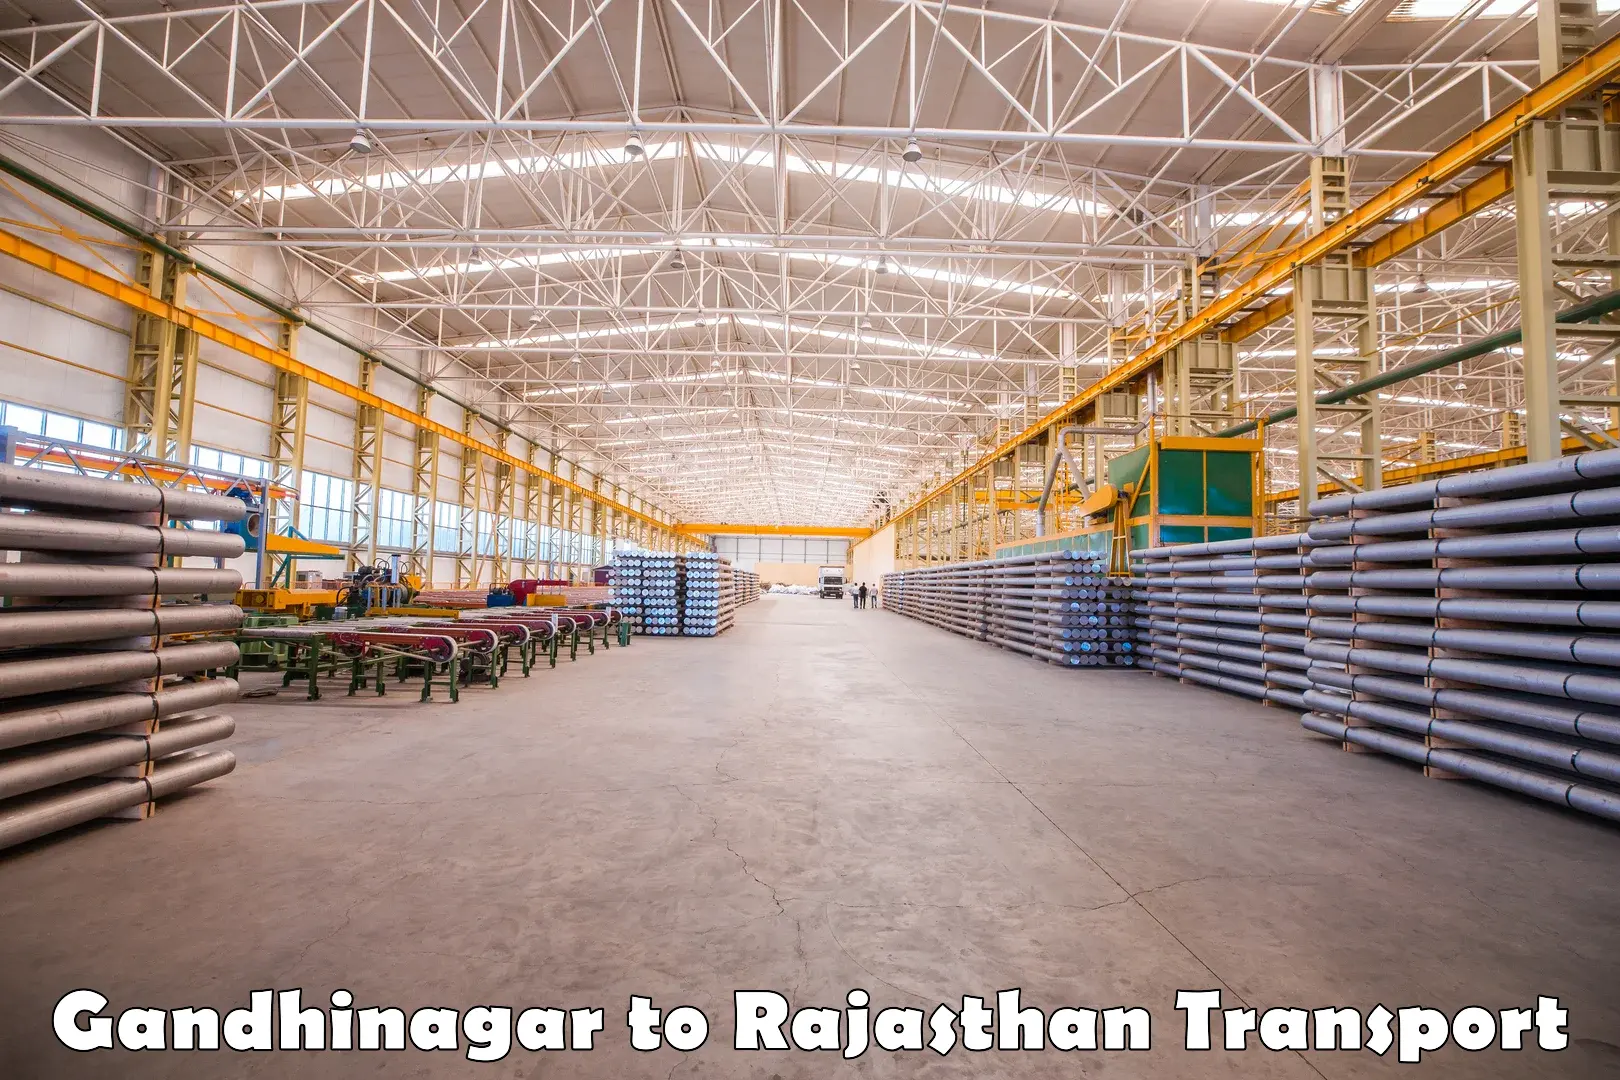 International cargo transportation services Gandhinagar to Shahpura Jaipur